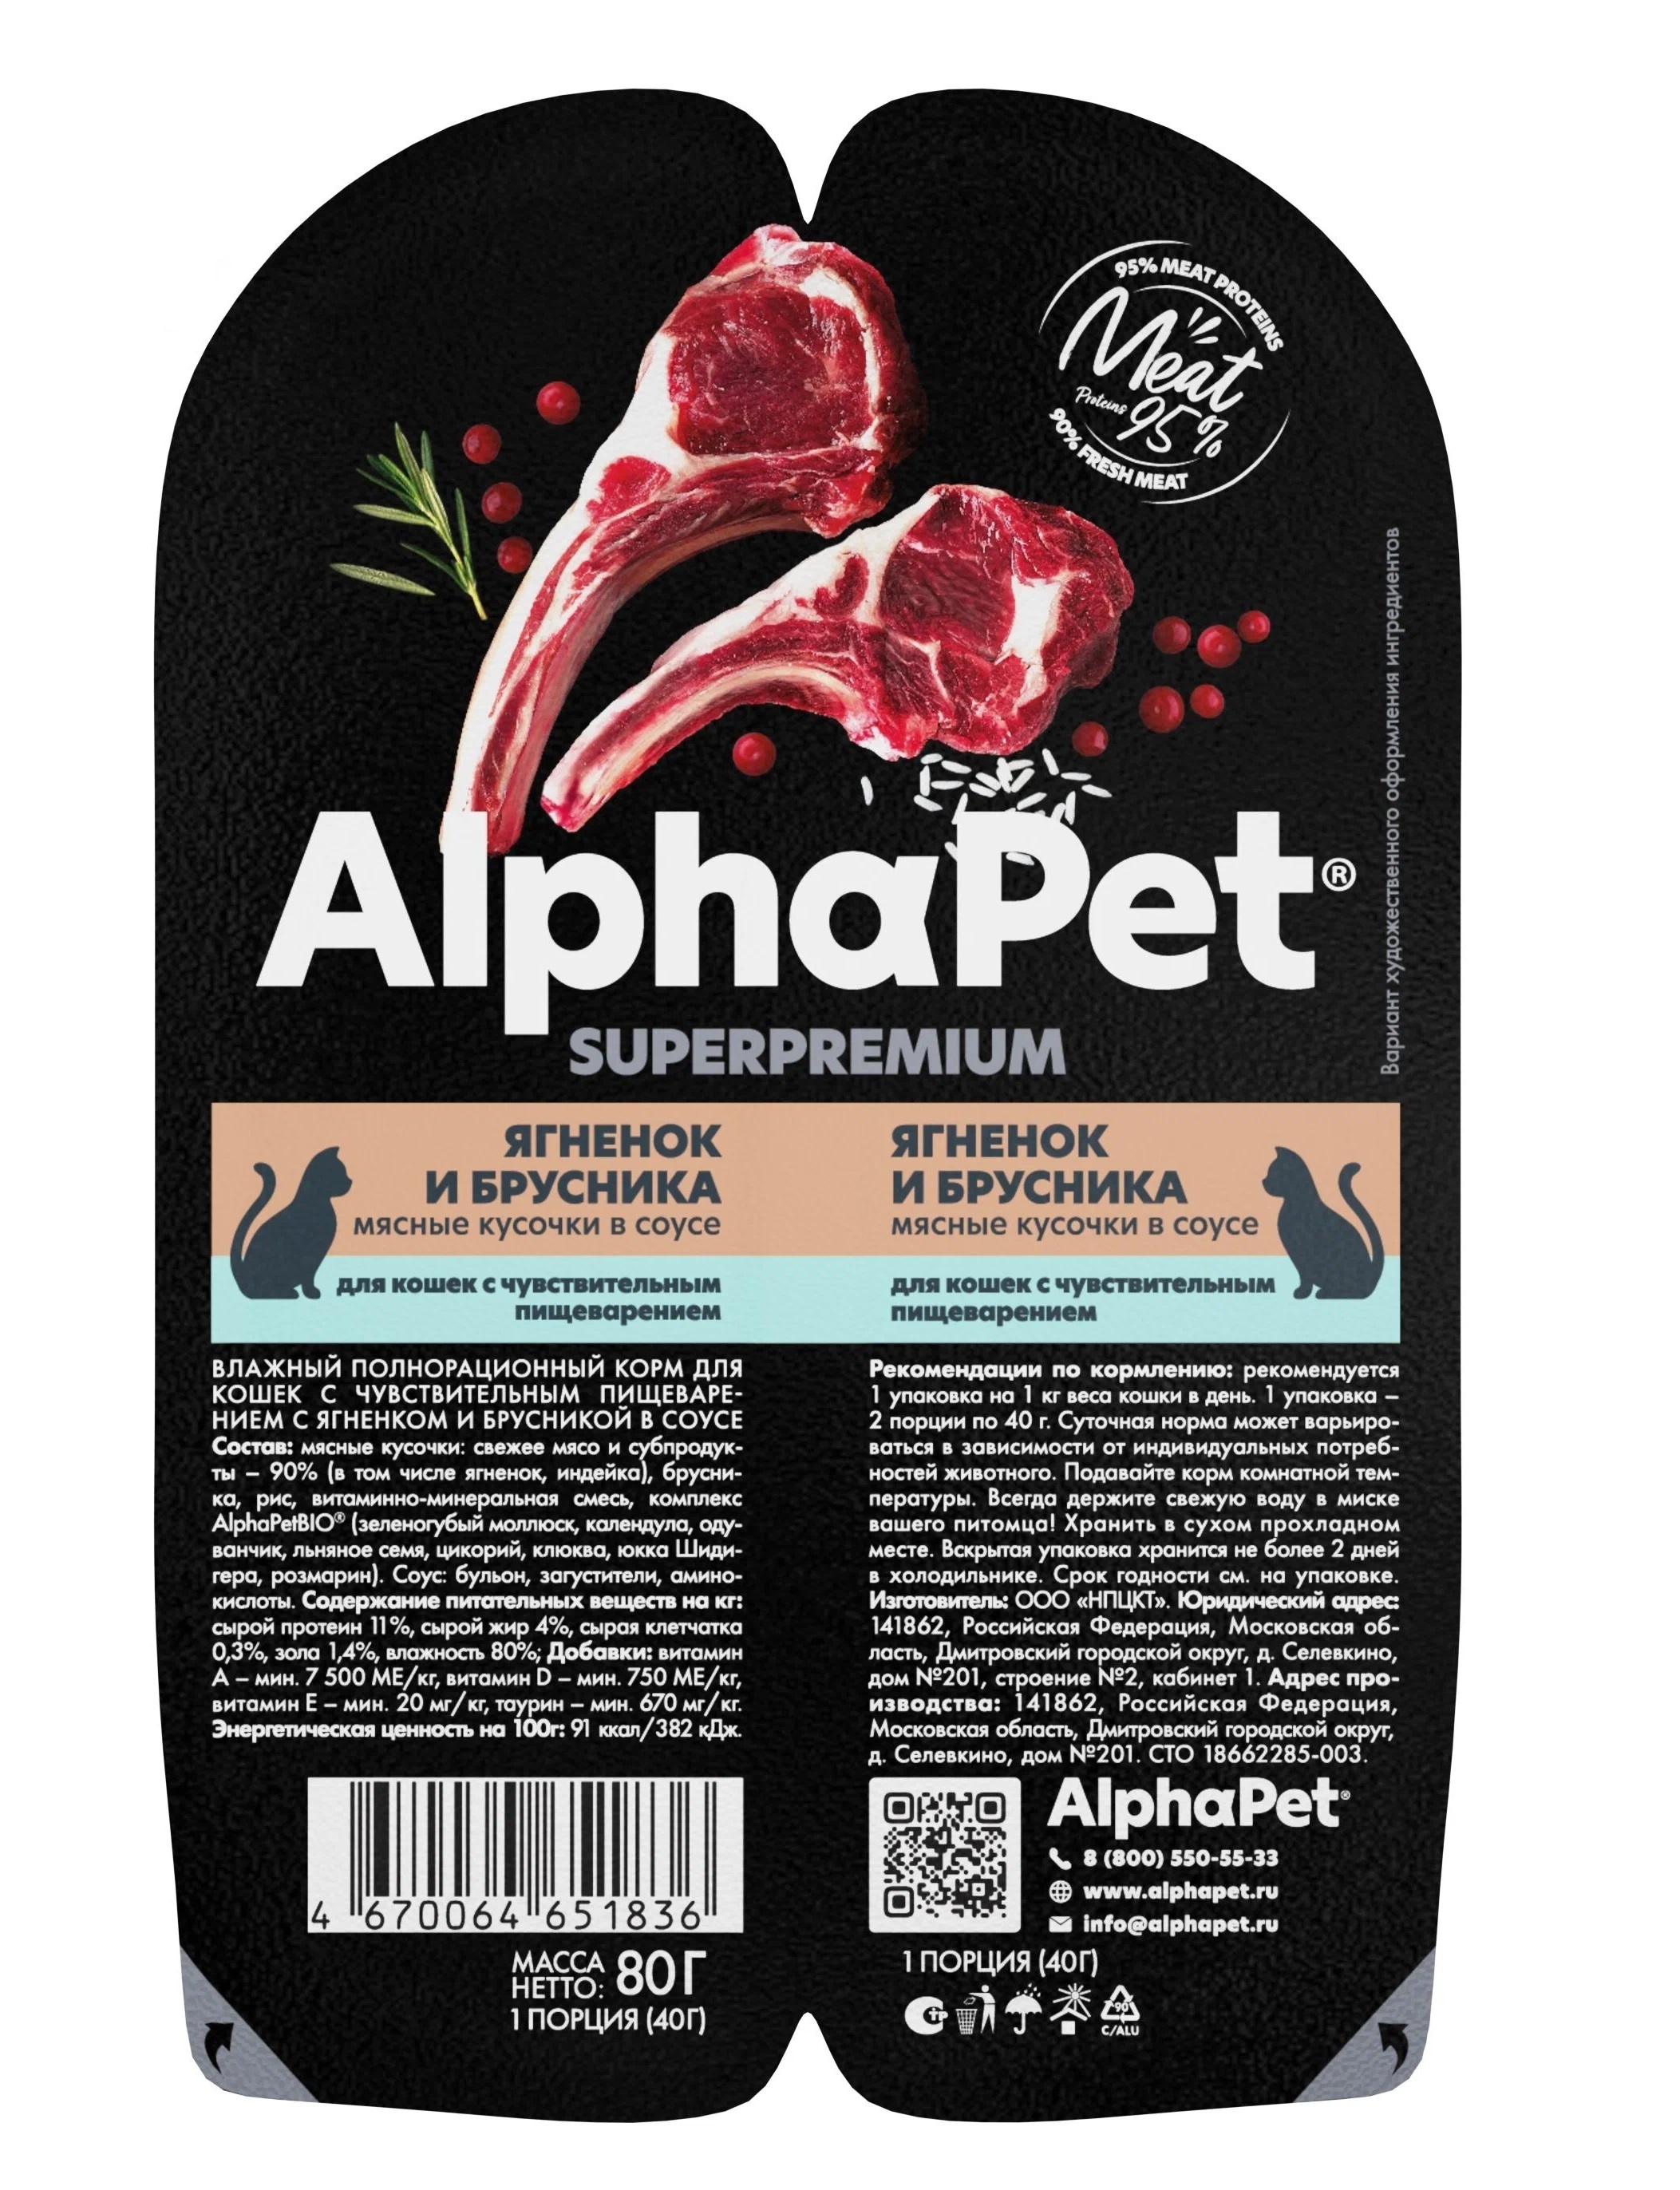 Консервы для кошек AlphaPet Superpremium, кусочки ягненка и брусники, 15шт по 80г